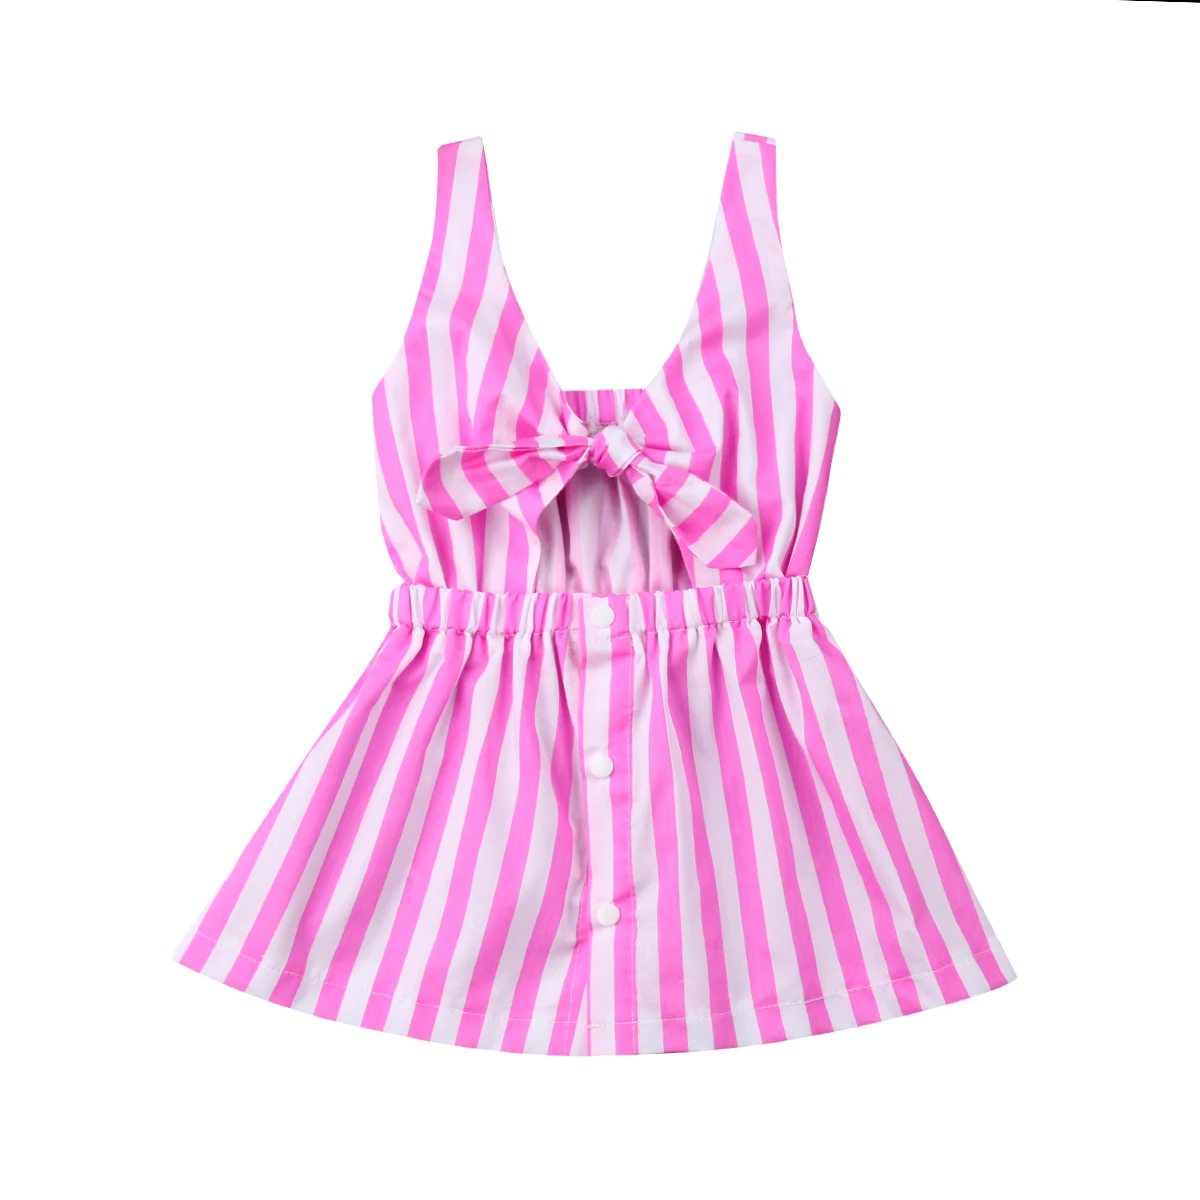 Летнее платье для мамы и дочки; одинаковое розовое платье в полоску с бантом для мамы и дочки; одежда для семьи